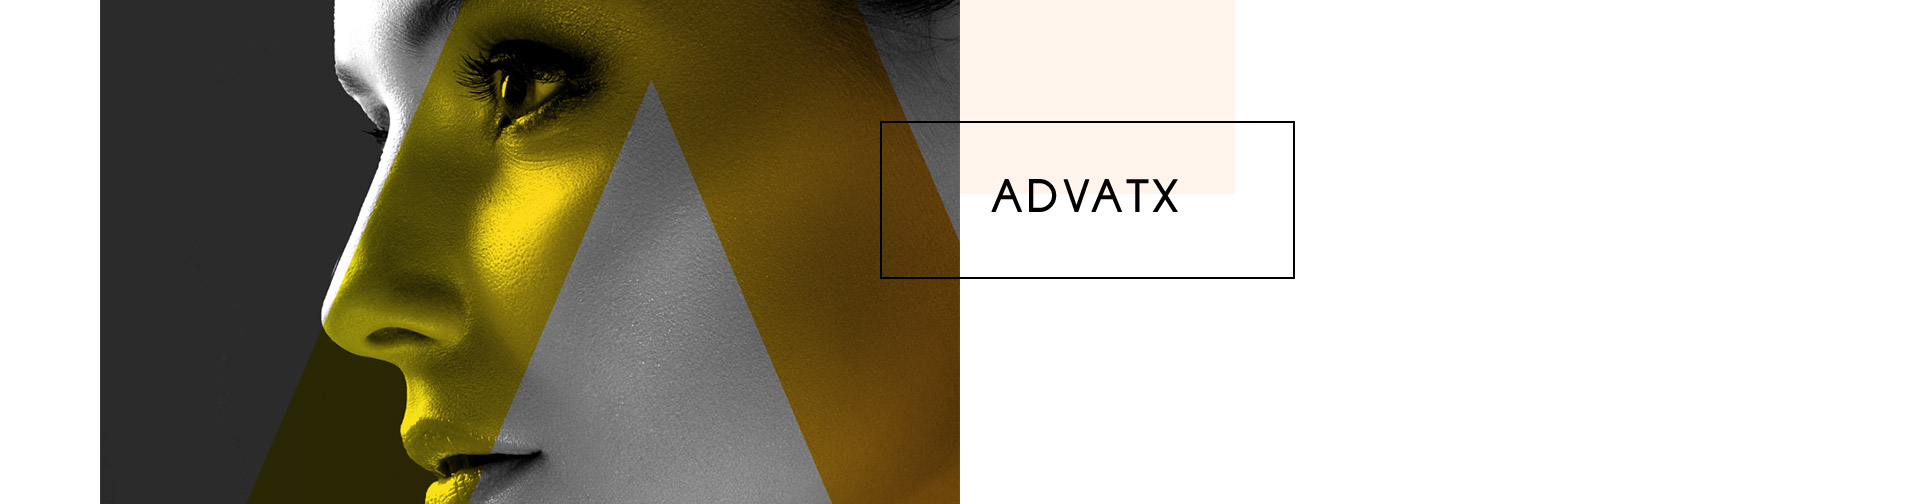 ADVATX 2 - technologie médicale esthétique - photo